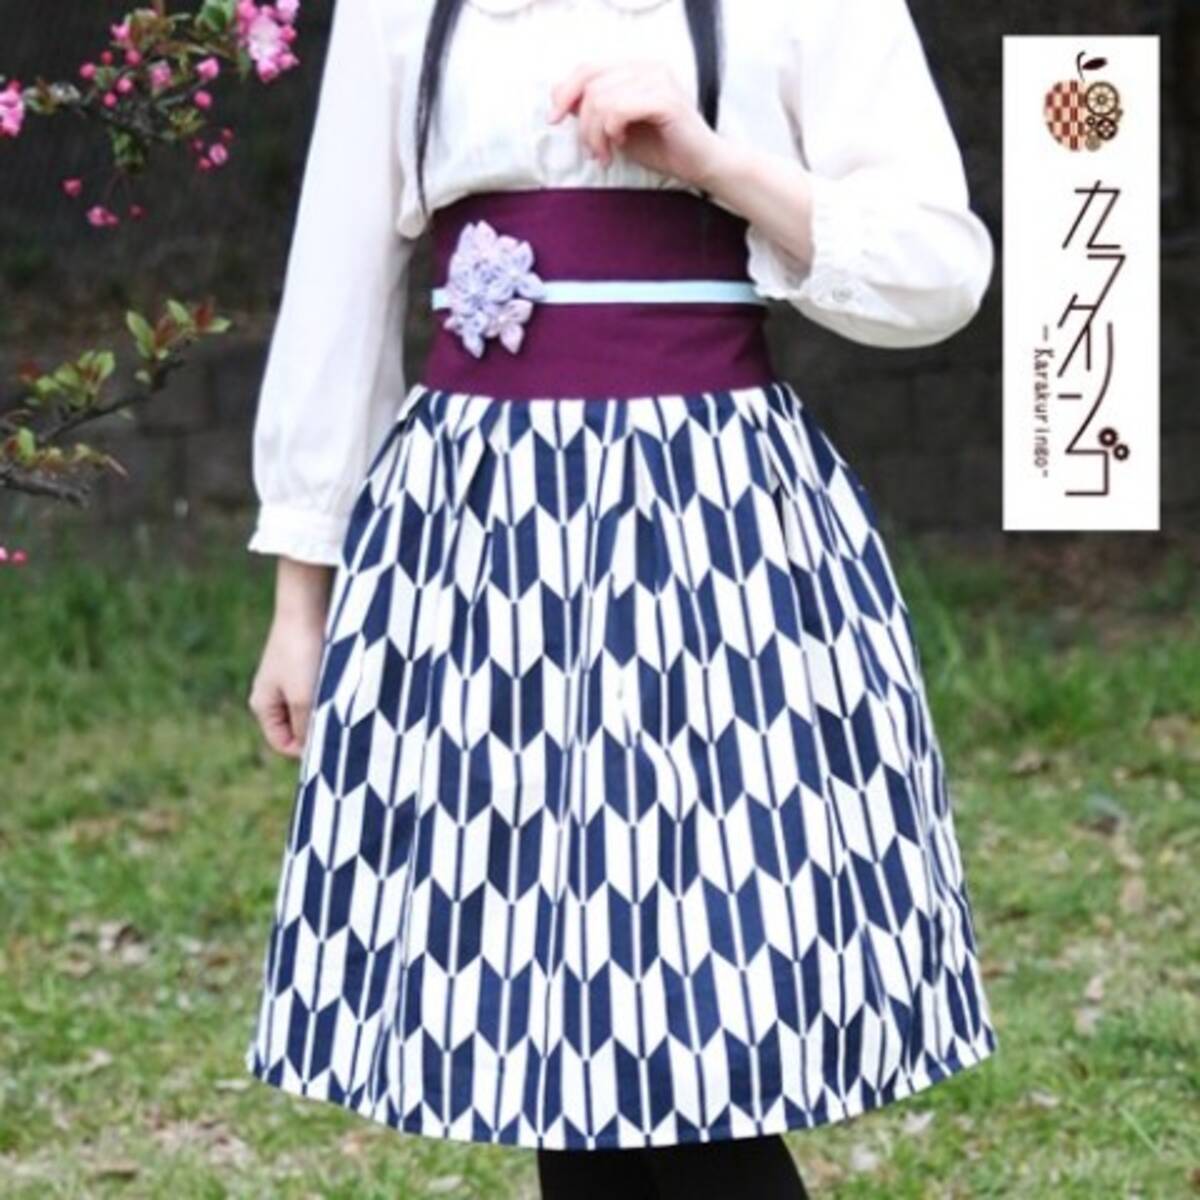 矢絣柄の袴をイメージした 現代版大正浪漫スカート が素敵 気分はまるで はいからさんが通る の主人公です 17年5月26日 エキサイトニュース